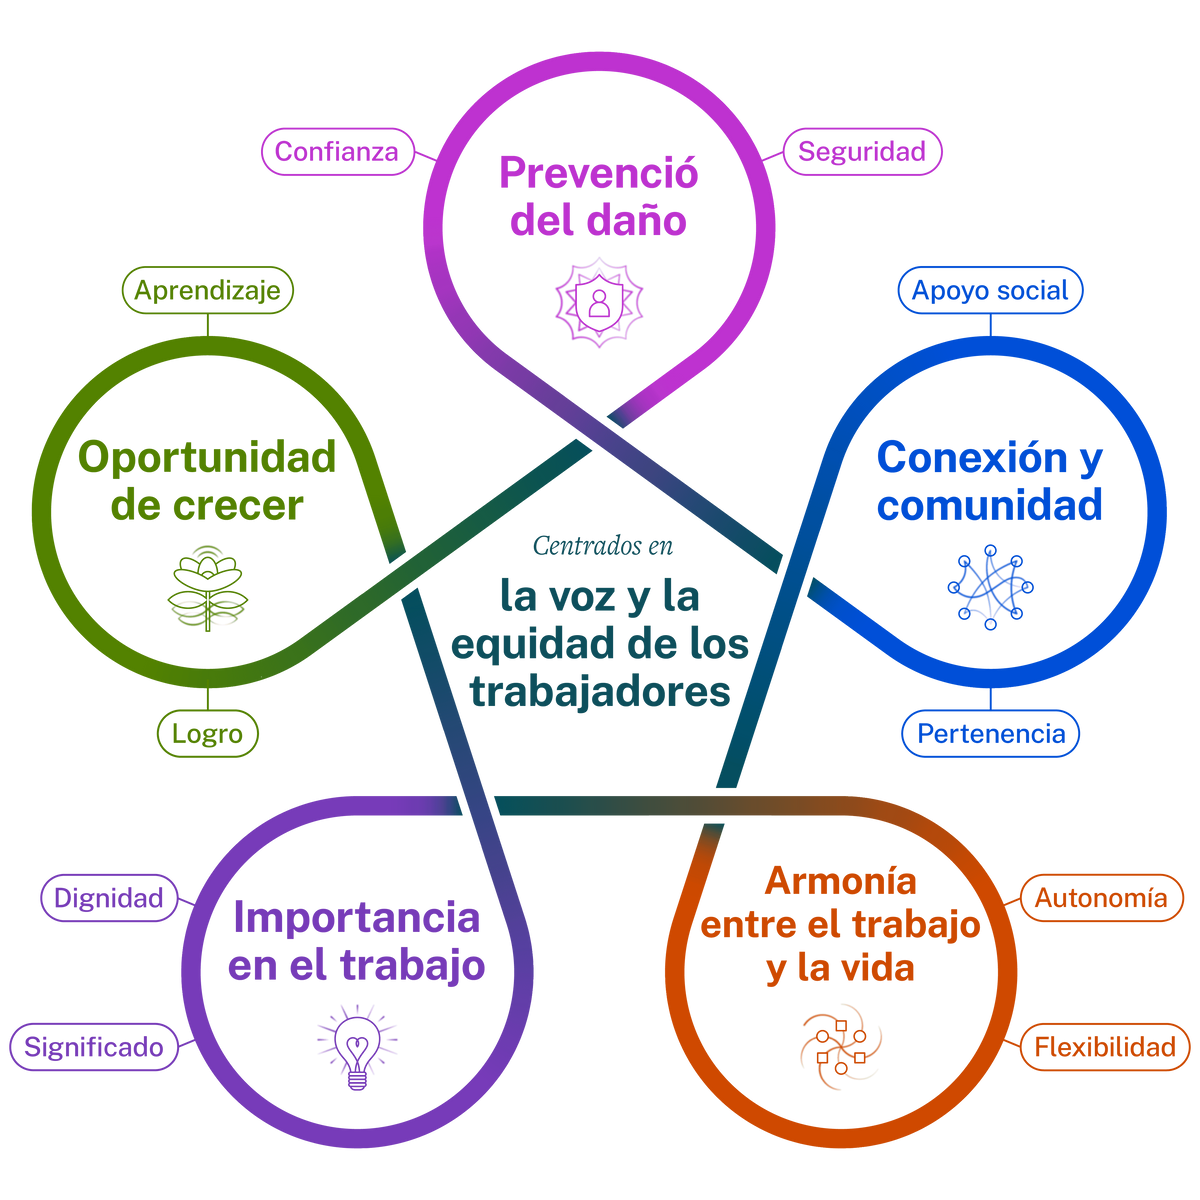 Ilustración de cinco elementos esenciales (prevención del daño, conexión y comunidad, armonía entre el trabajo y la vida, importancia en el trabajo y oportunidad de crecer) en un círculo, con la voz y la equidad de los trabajadores en el centro.